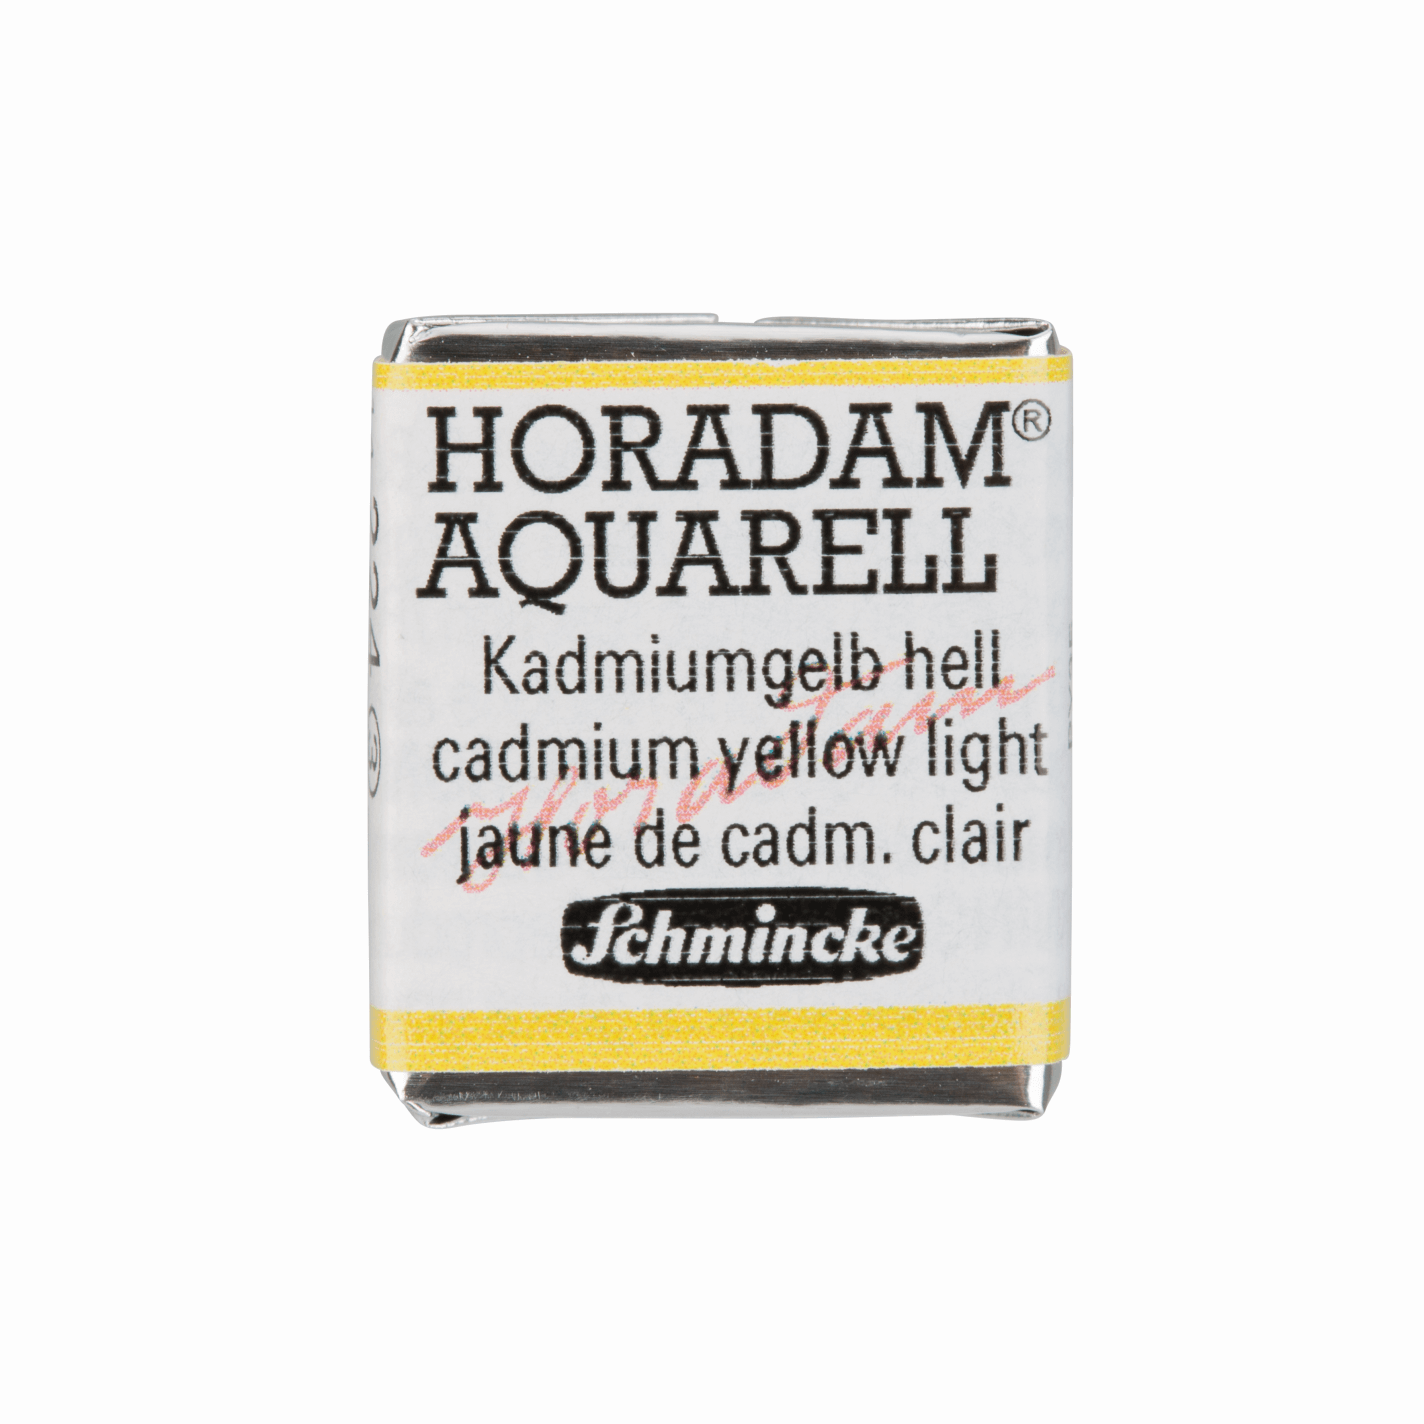 Schmincke Horadam Aquarell pans 1/2 pan Cadmium Yellow Light